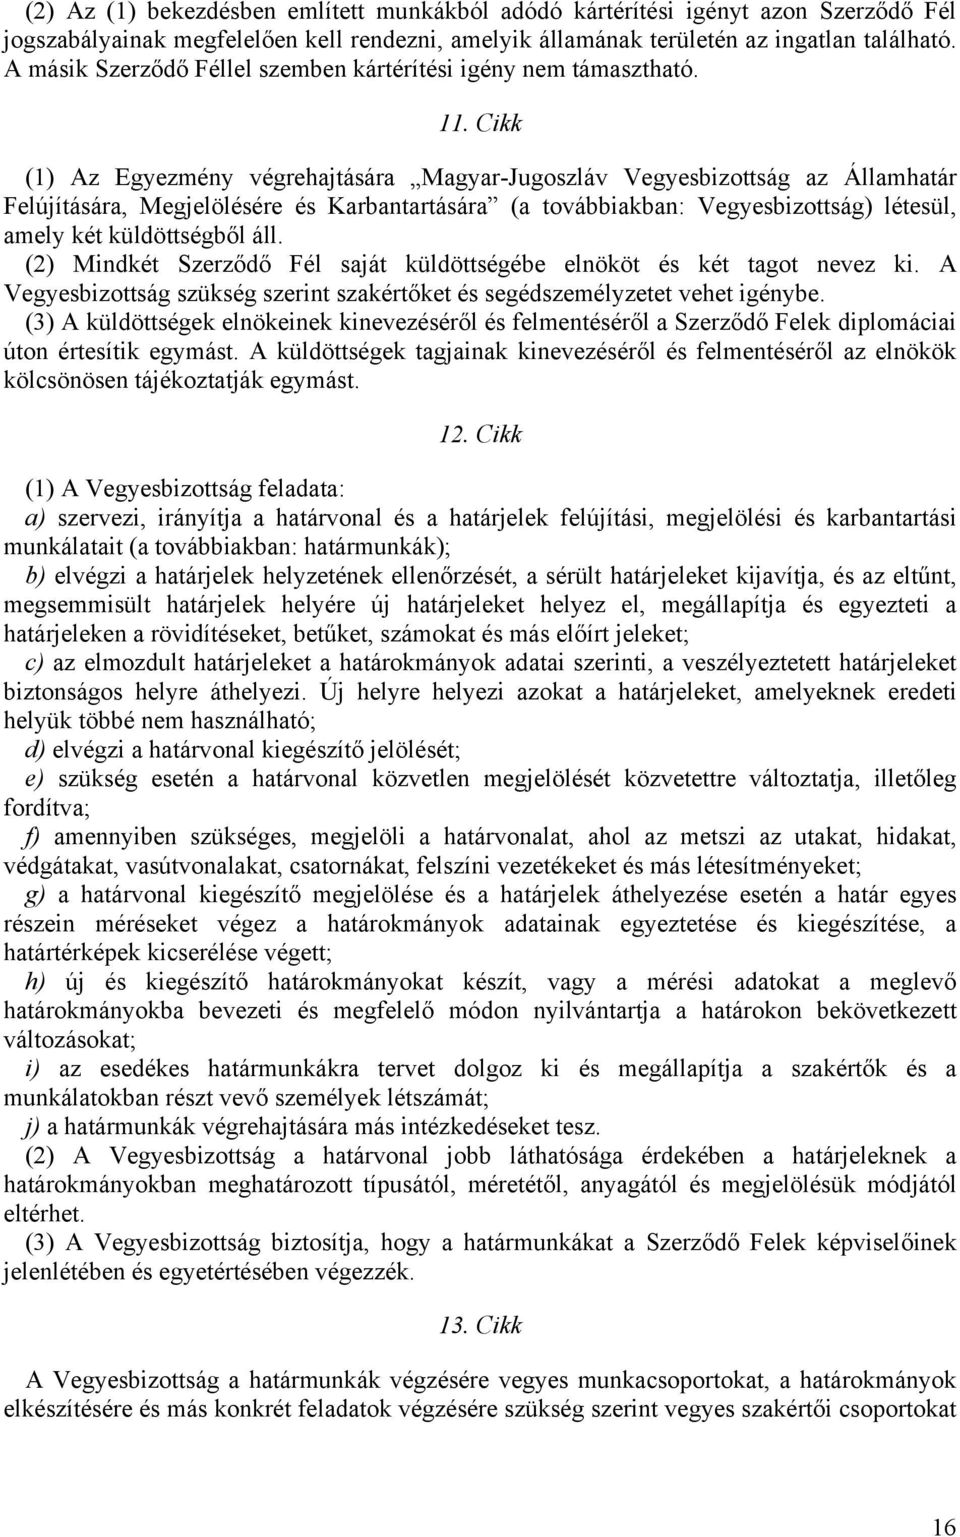 Cikk (1) Az Egyezmény végrehajtására Magyar-Jugoszláv Vegyesbizottság az Államhatár Felújítására, Megjelölésére és Karbantartására (a továbbiakban: Vegyesbizottság) létesül, amely két küldöttségből